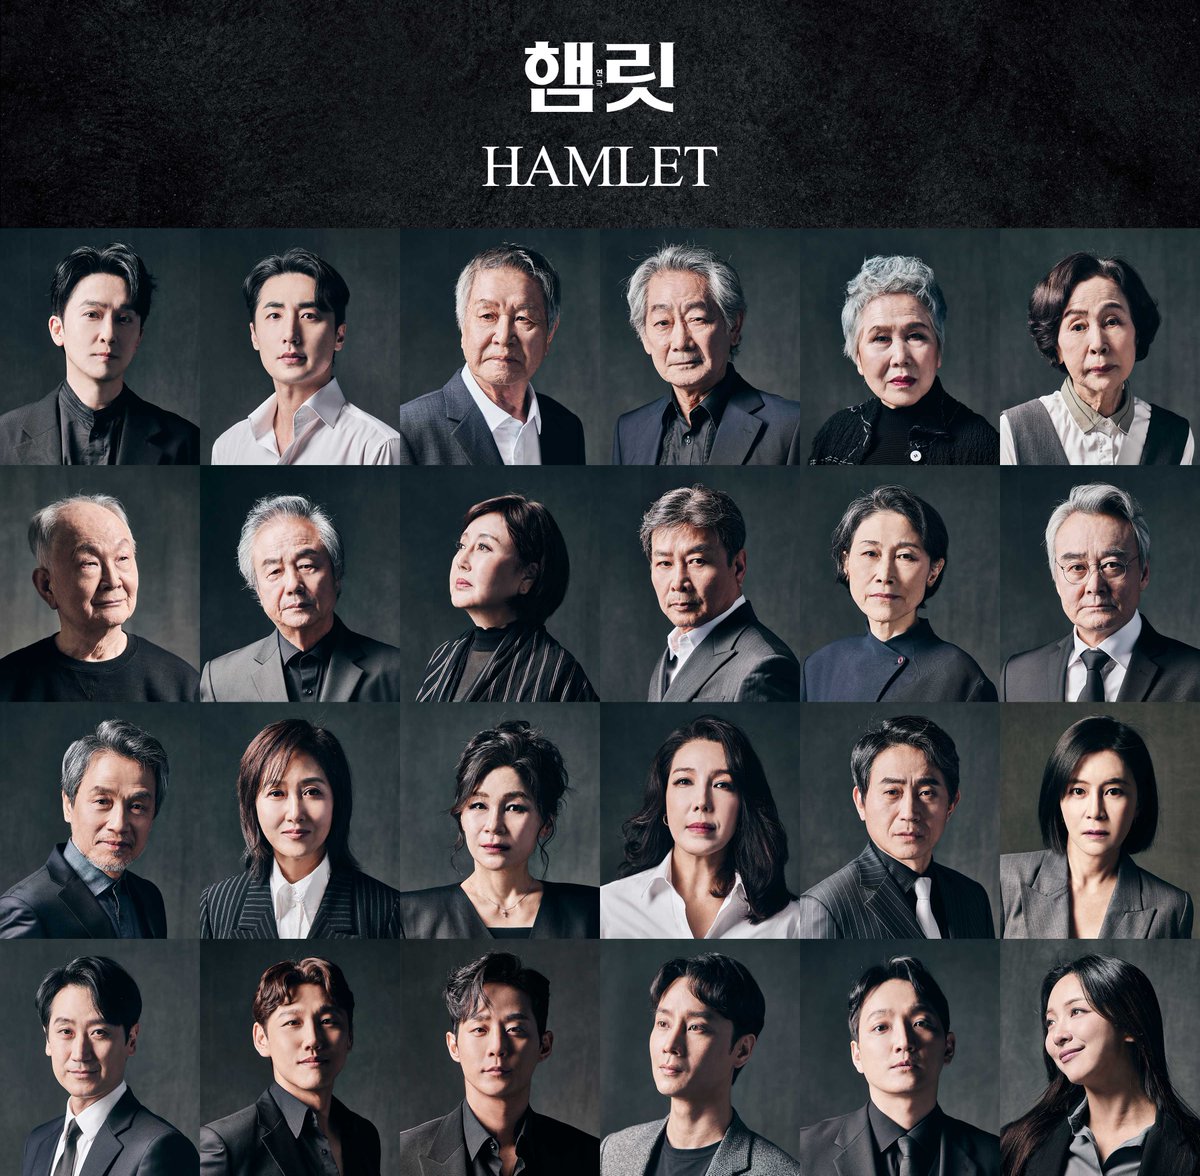 [더뮤지컬 뉴스] 오는 6월 개막하는 연극 <햄릿>에서 강필석, 이승주가 햄릿을 연기합니다. 기사 보러 가기▶️themusical.co.kr/News/Detail?nu…